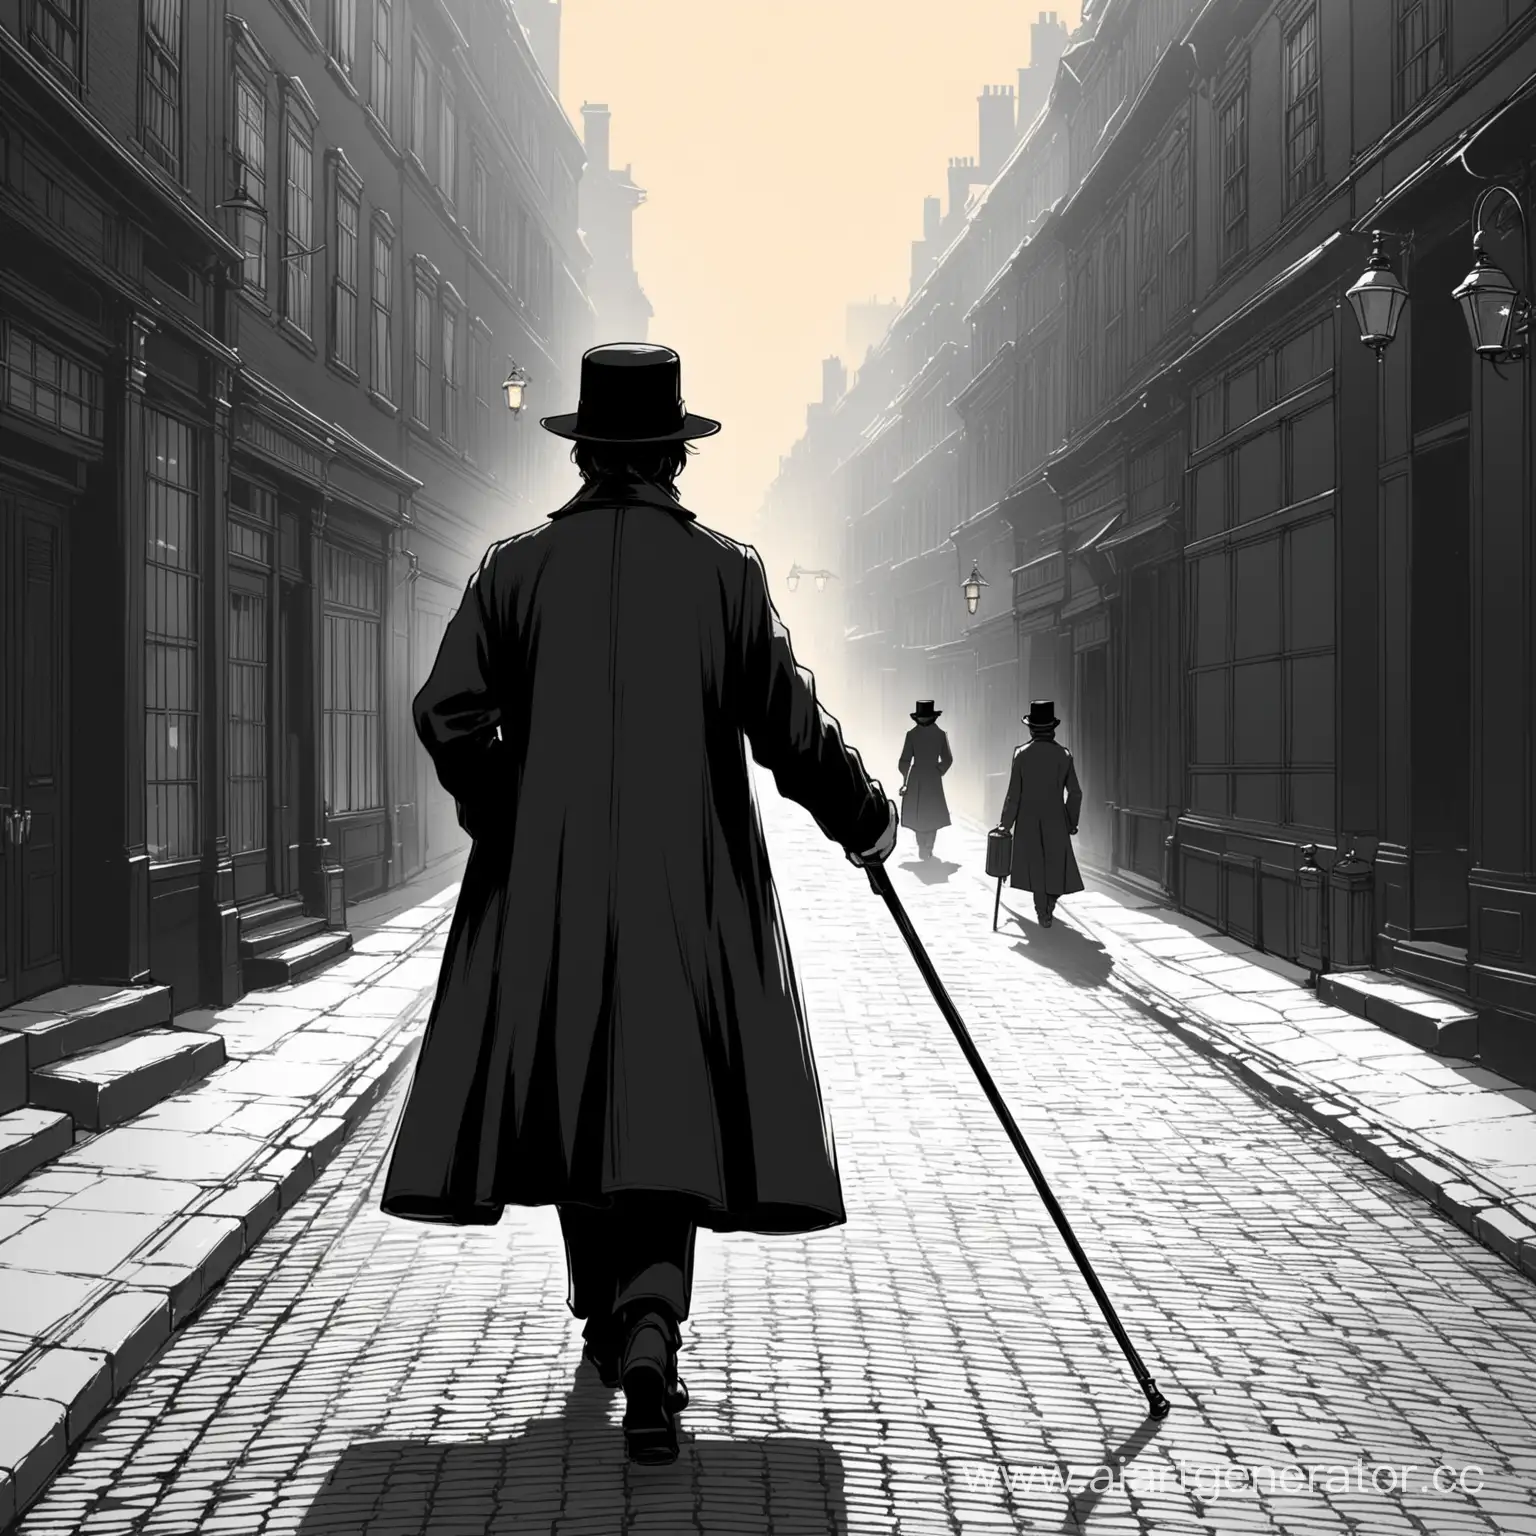 нарисуй человека который идет по улице 19 века в черной шляпе черном польто с тростью 